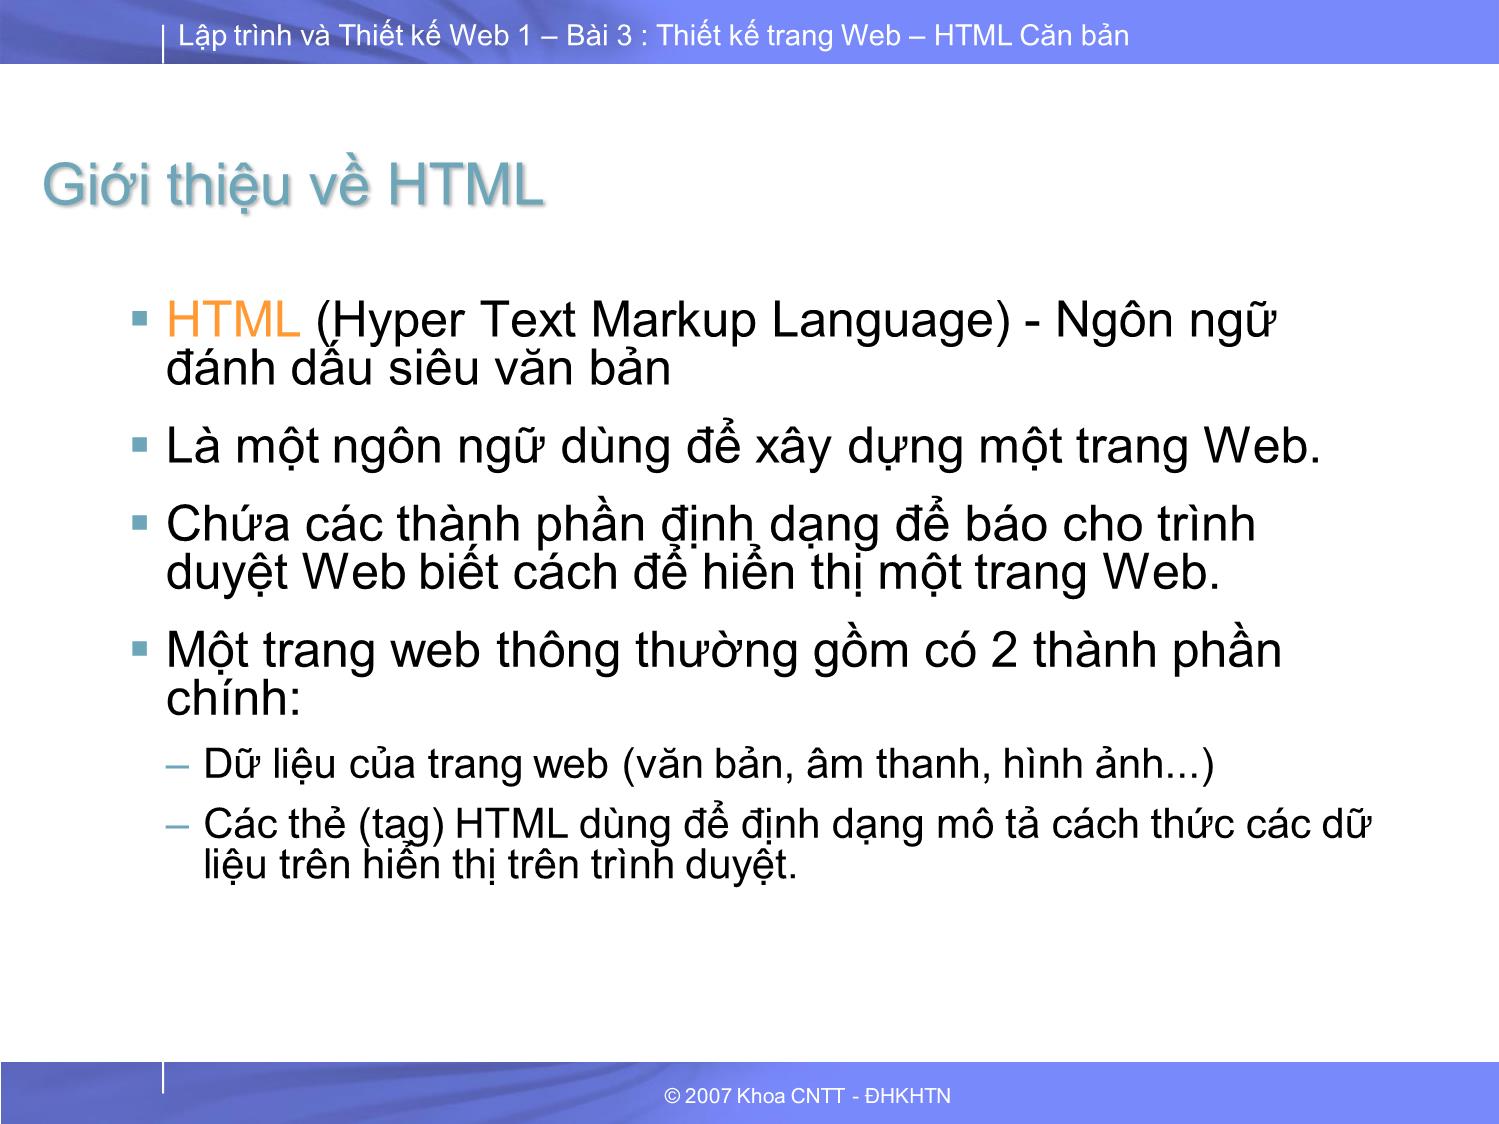 Lập trình và thiết kế Web 1 - Bài 3: Thiết kế trang Web HTML căn bản trang 4